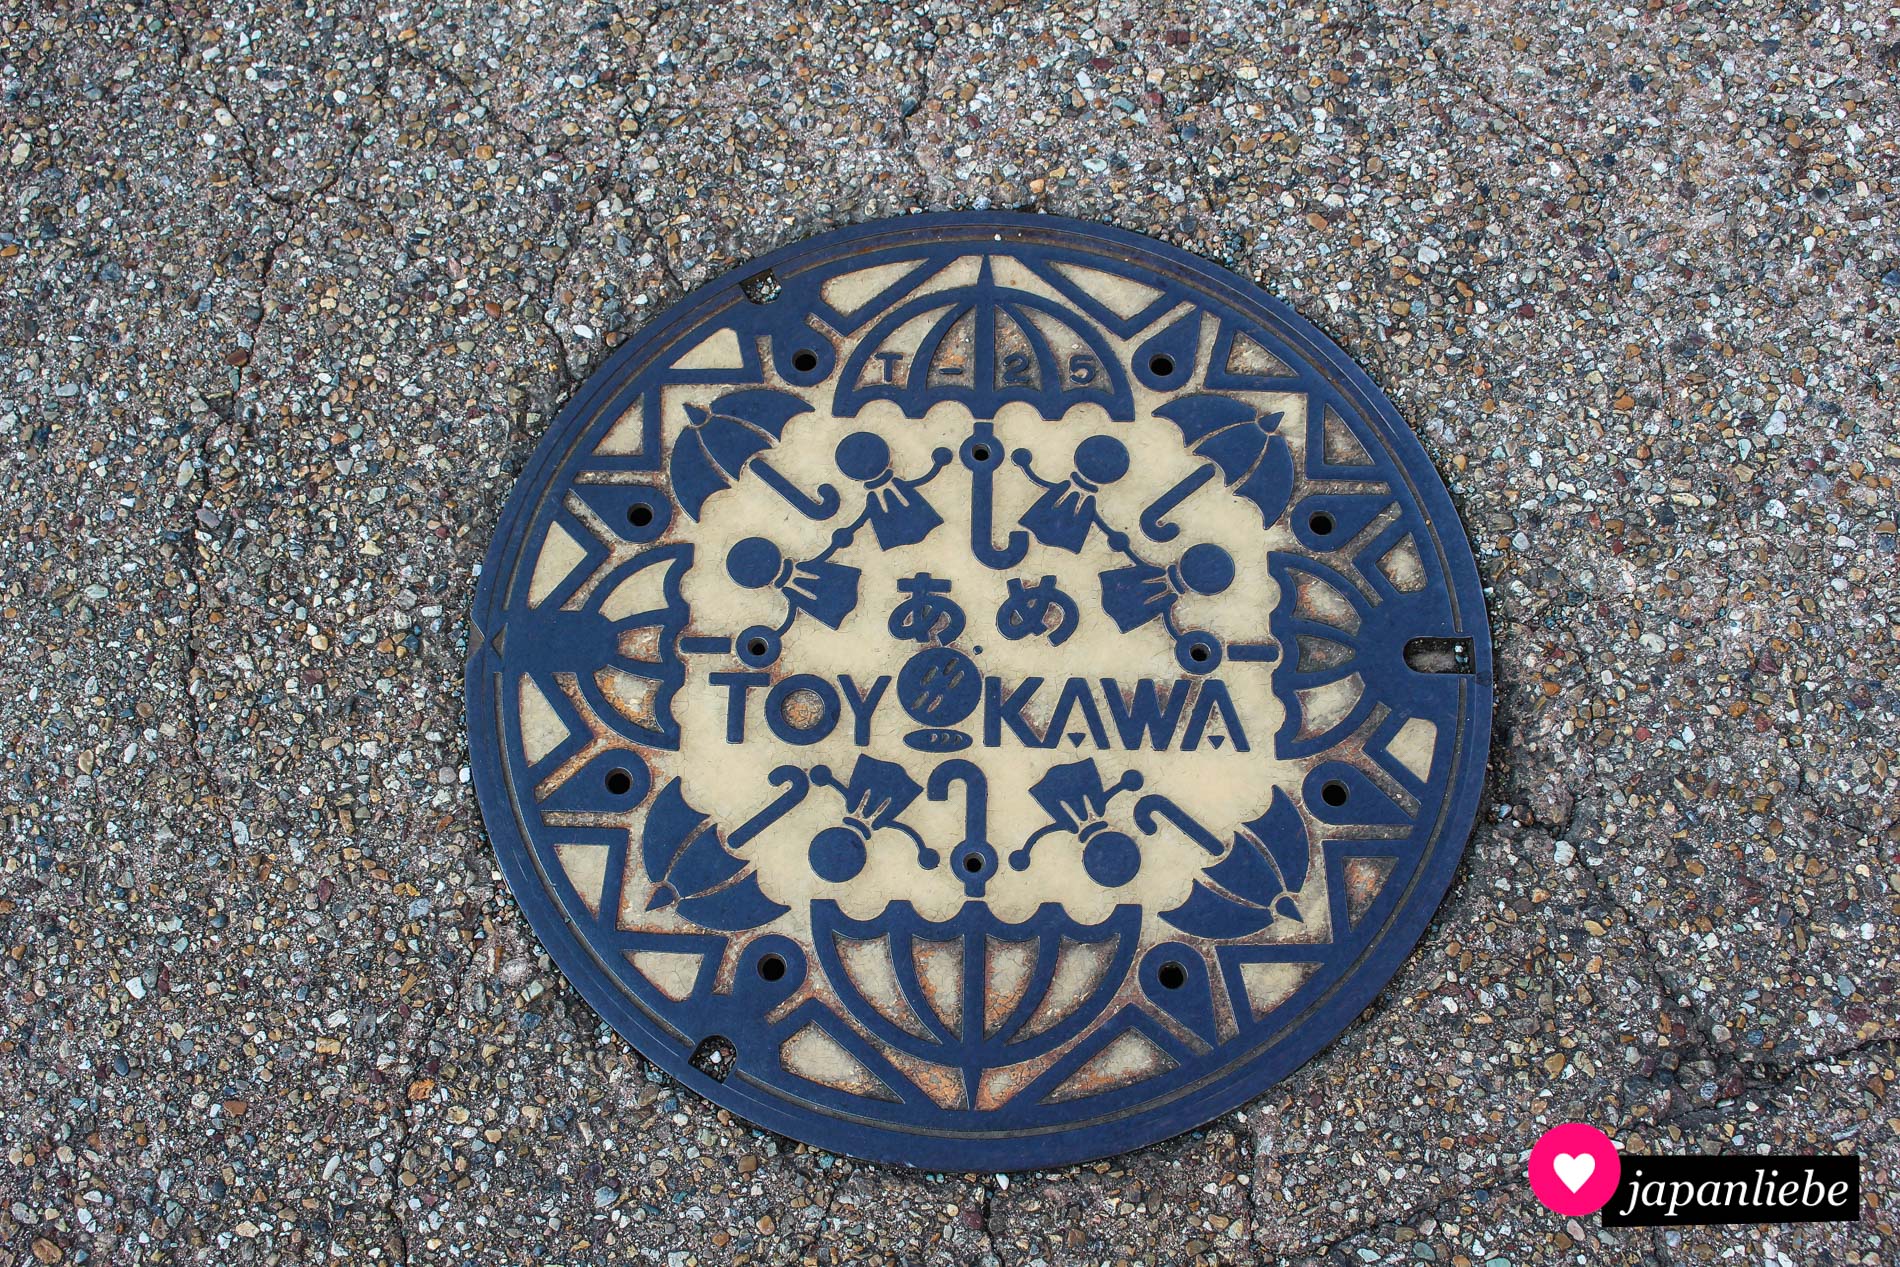 Viele „teru teru bōzu“-Püppchen bilden umringt von Regenschirmen einen Kreis. In der Mitte des Gullydeckels steht auf japanisch das Wort „ame“ für Regen.